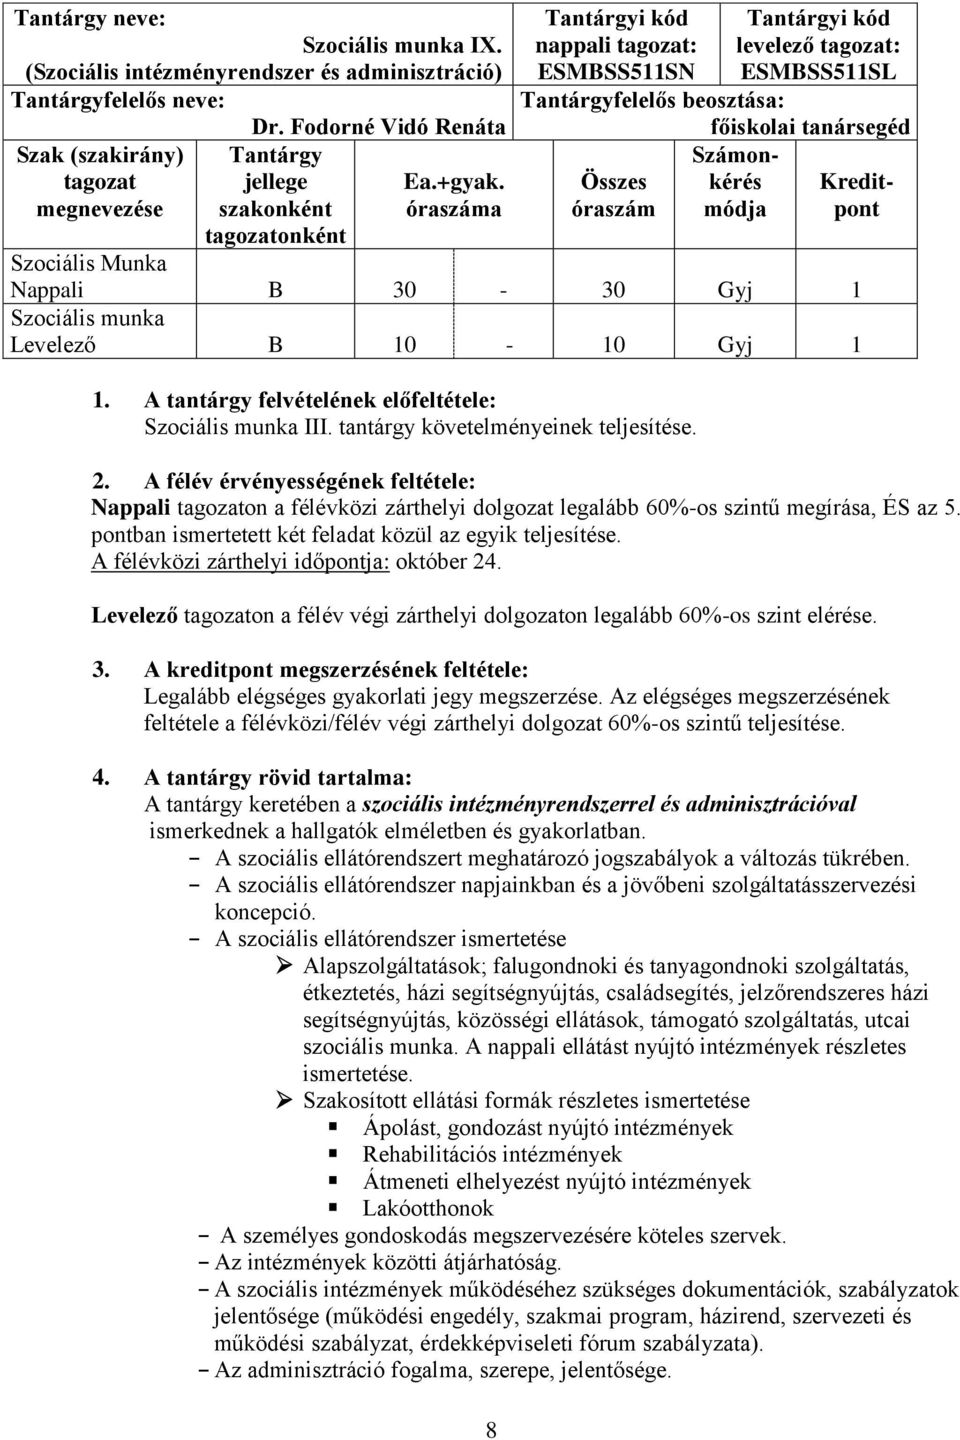 Szociális munka alapszak levelező tagozat III. évfolyam as tanév 1. félév  programjai - PDF Ingyenes letöltés